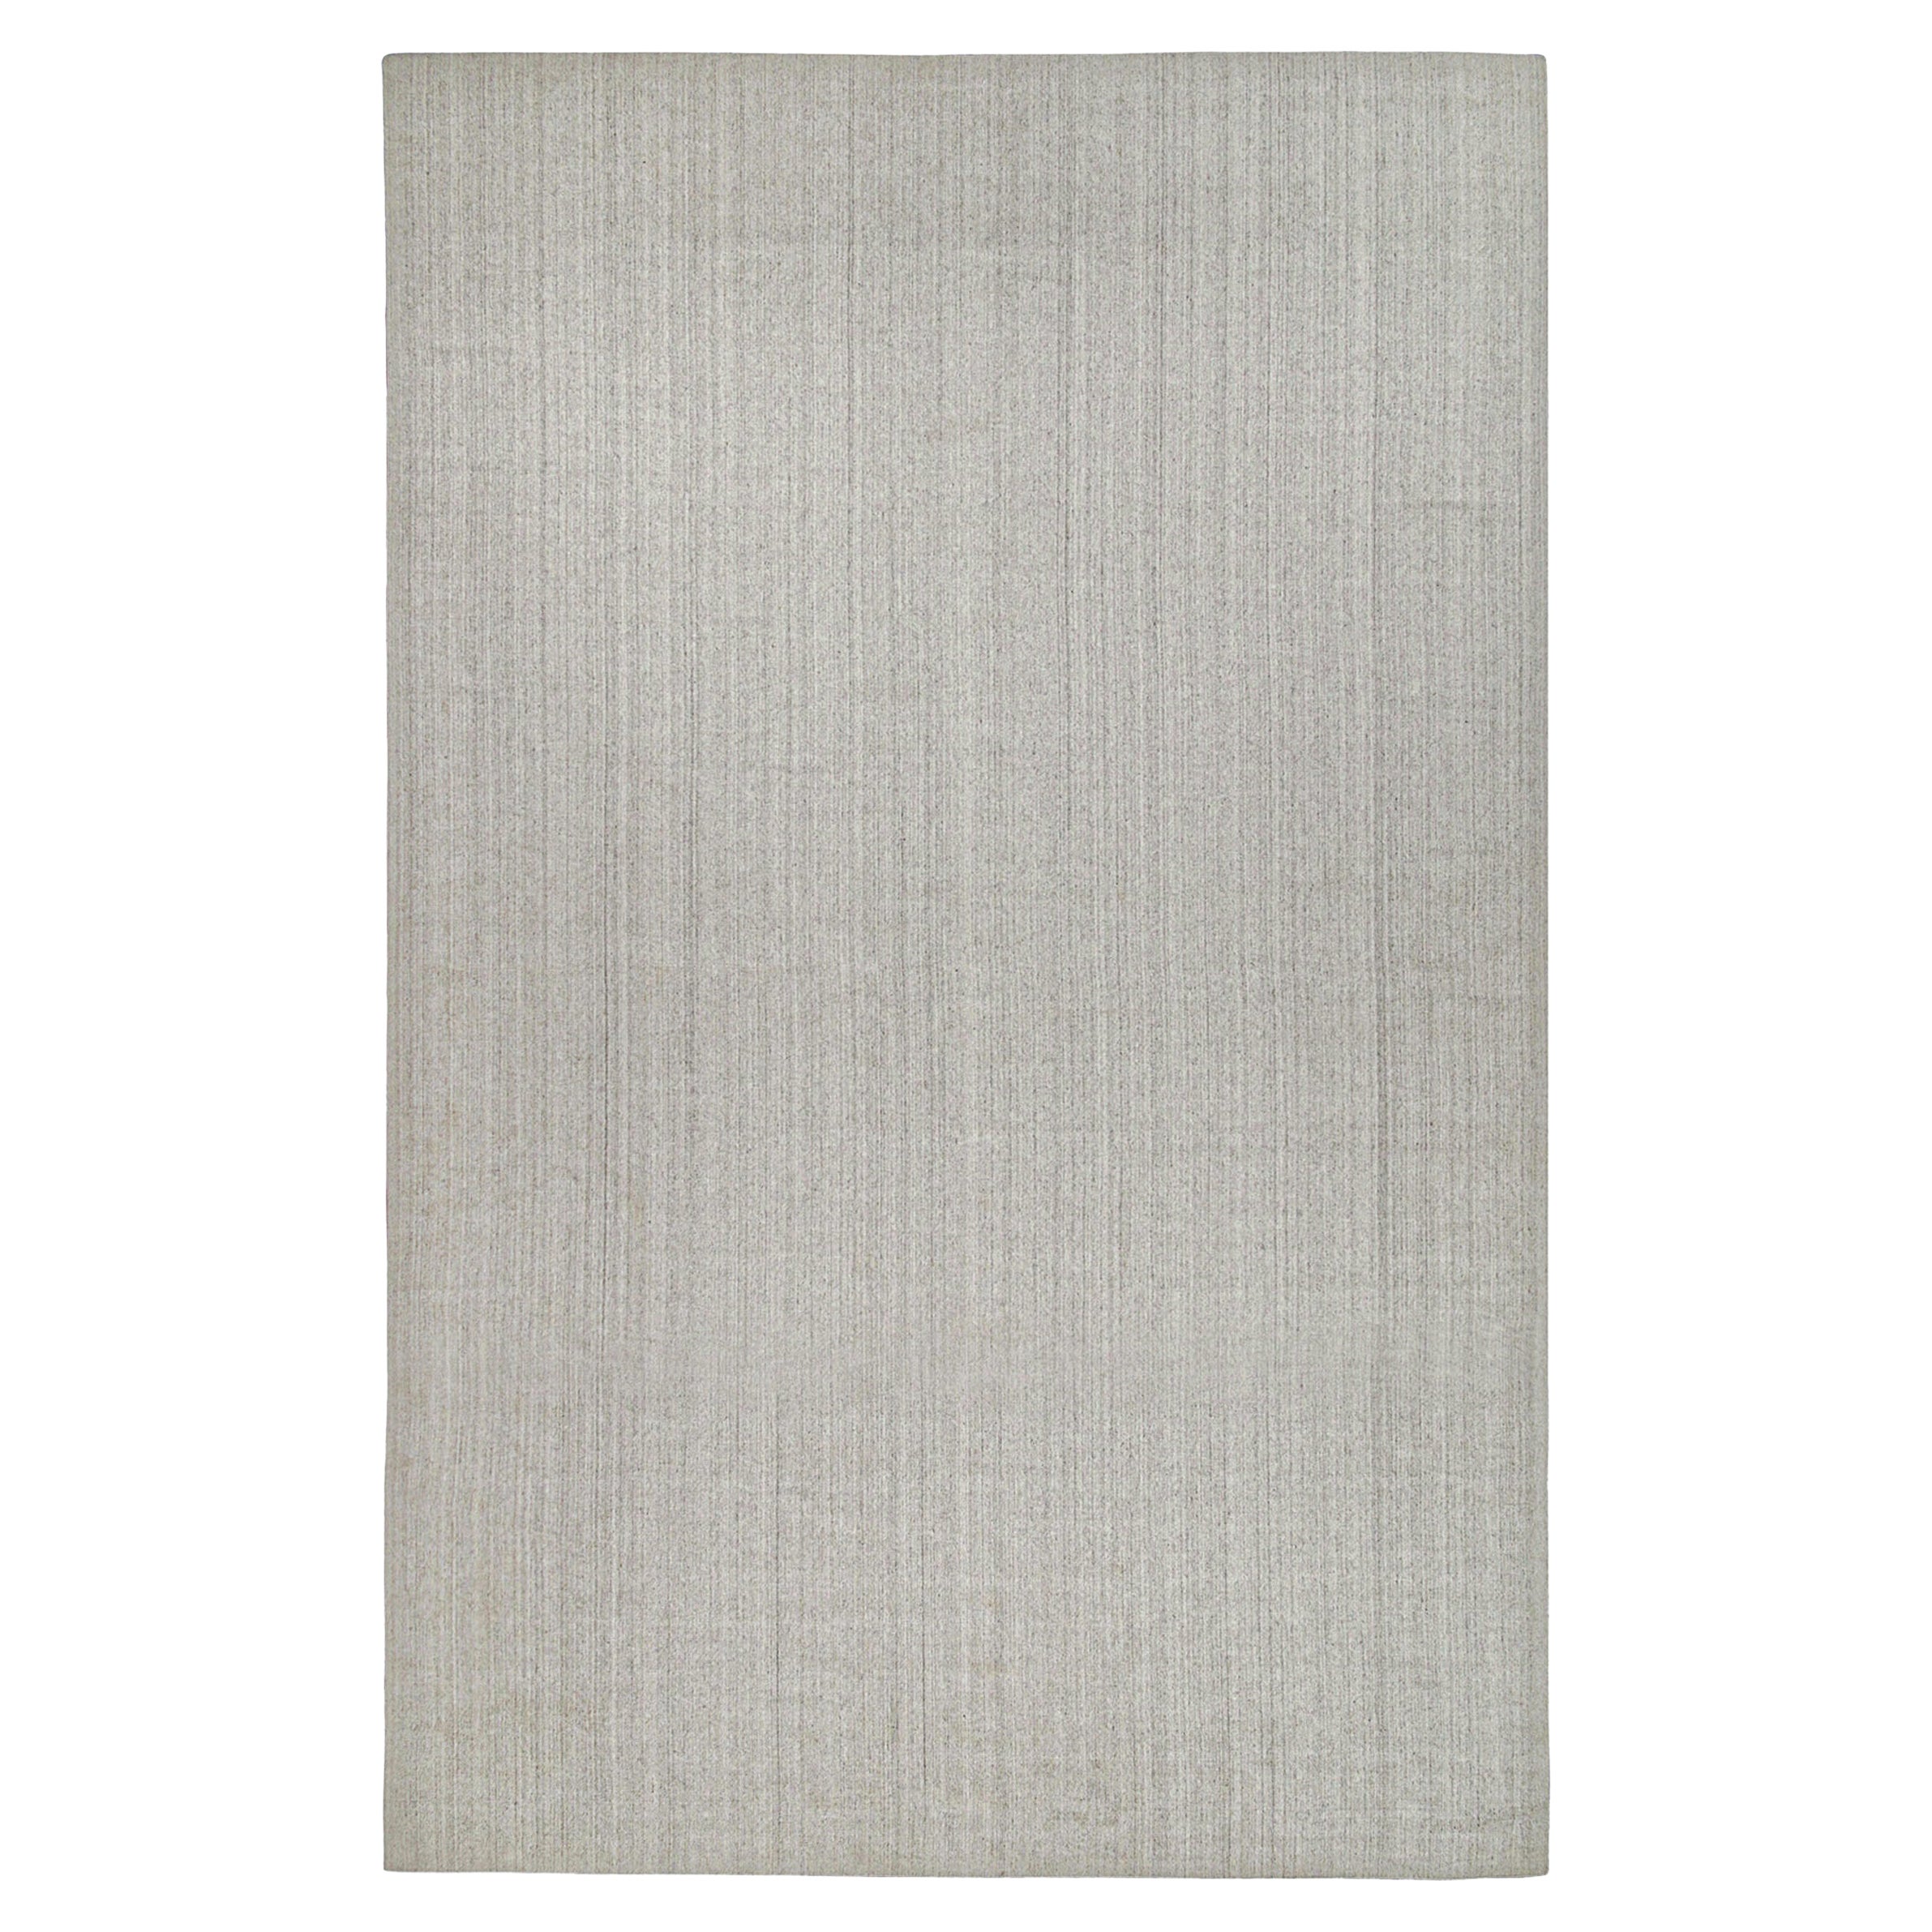 Ce tapis contemporain 12x15 est une nouvelle entrée grandiose dans la Collection Texture of Color de Rug & Kilim. Noué à la main en soie d'art et en coton. 

Les connaisseurs noteront que cette pièce est issue de notre nouvelle ligne Light on Loom,